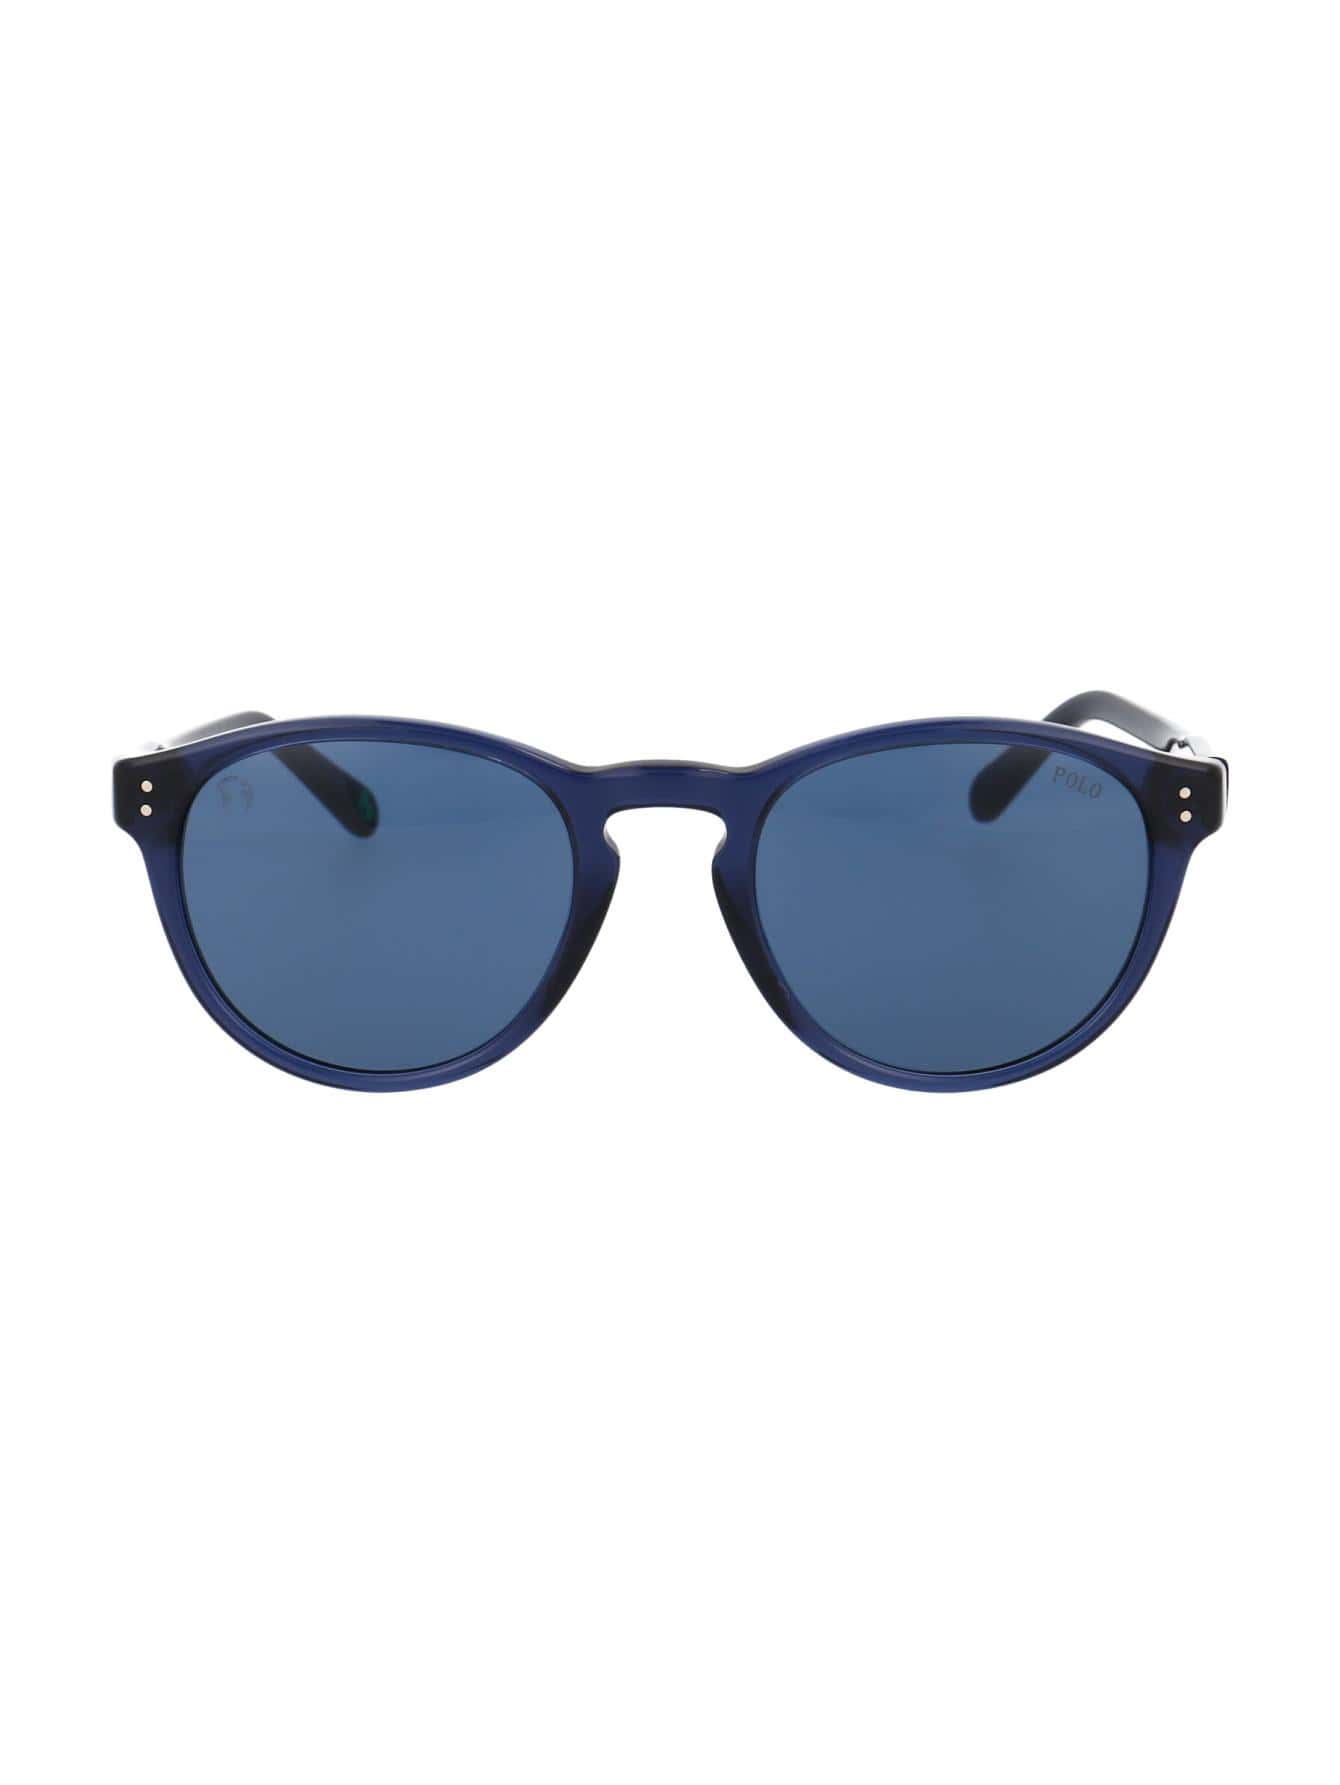 Мужские солнцезащитные очки Polo Ralph Lauren СИНИЕ 0PH4172595580, синий мужские солнцезащитные очки ph4172 50 polo ralph lauren